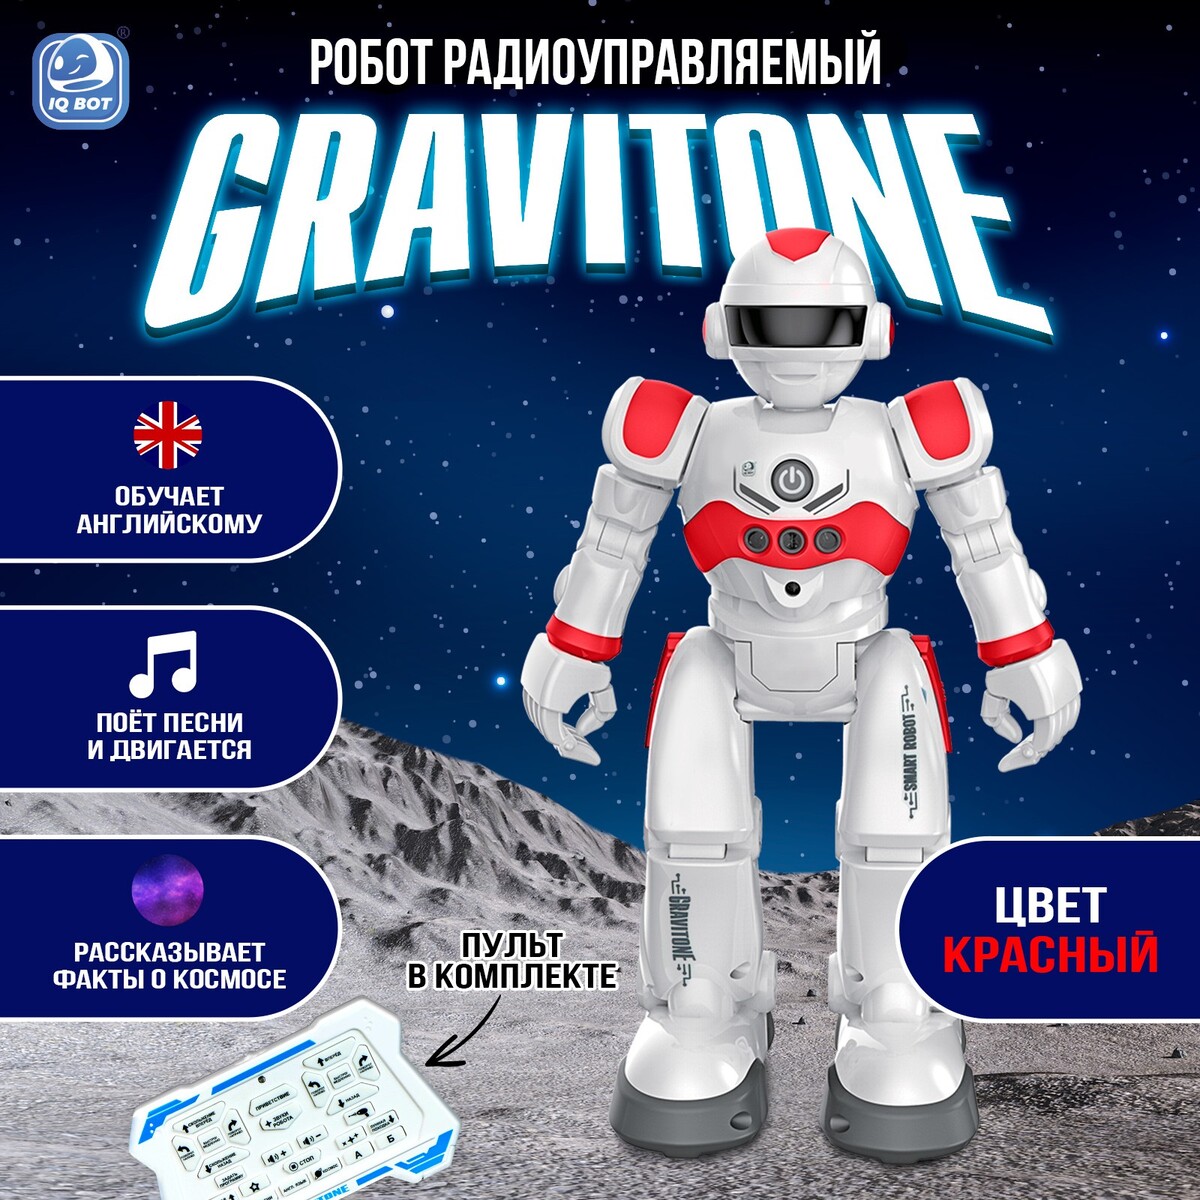 Робот радиоуправляемый iq bot gravitone, русское озвучивание, цвет красный танцующий робот dance hero железный человек красный